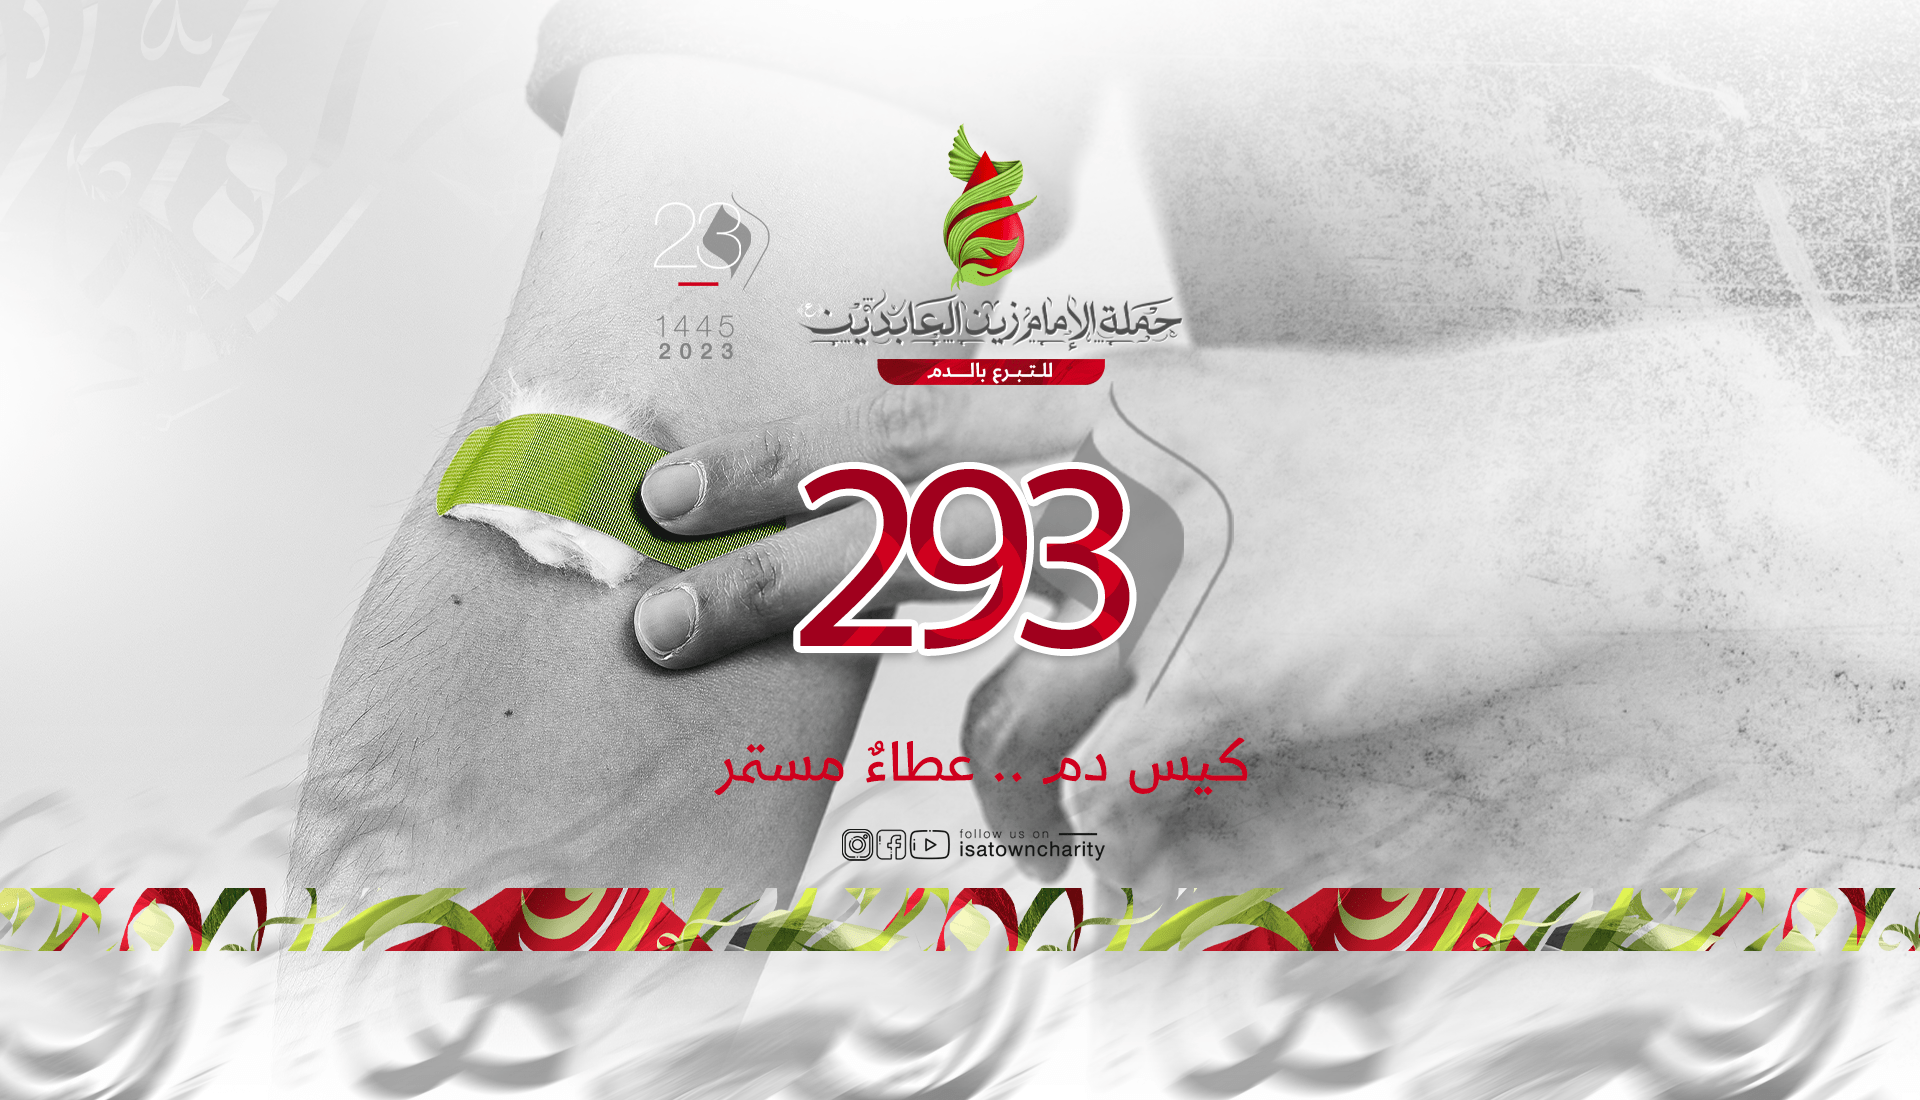 حملة الامام زين العابدين تحصد 293 كيس دم في نسختها الـ23